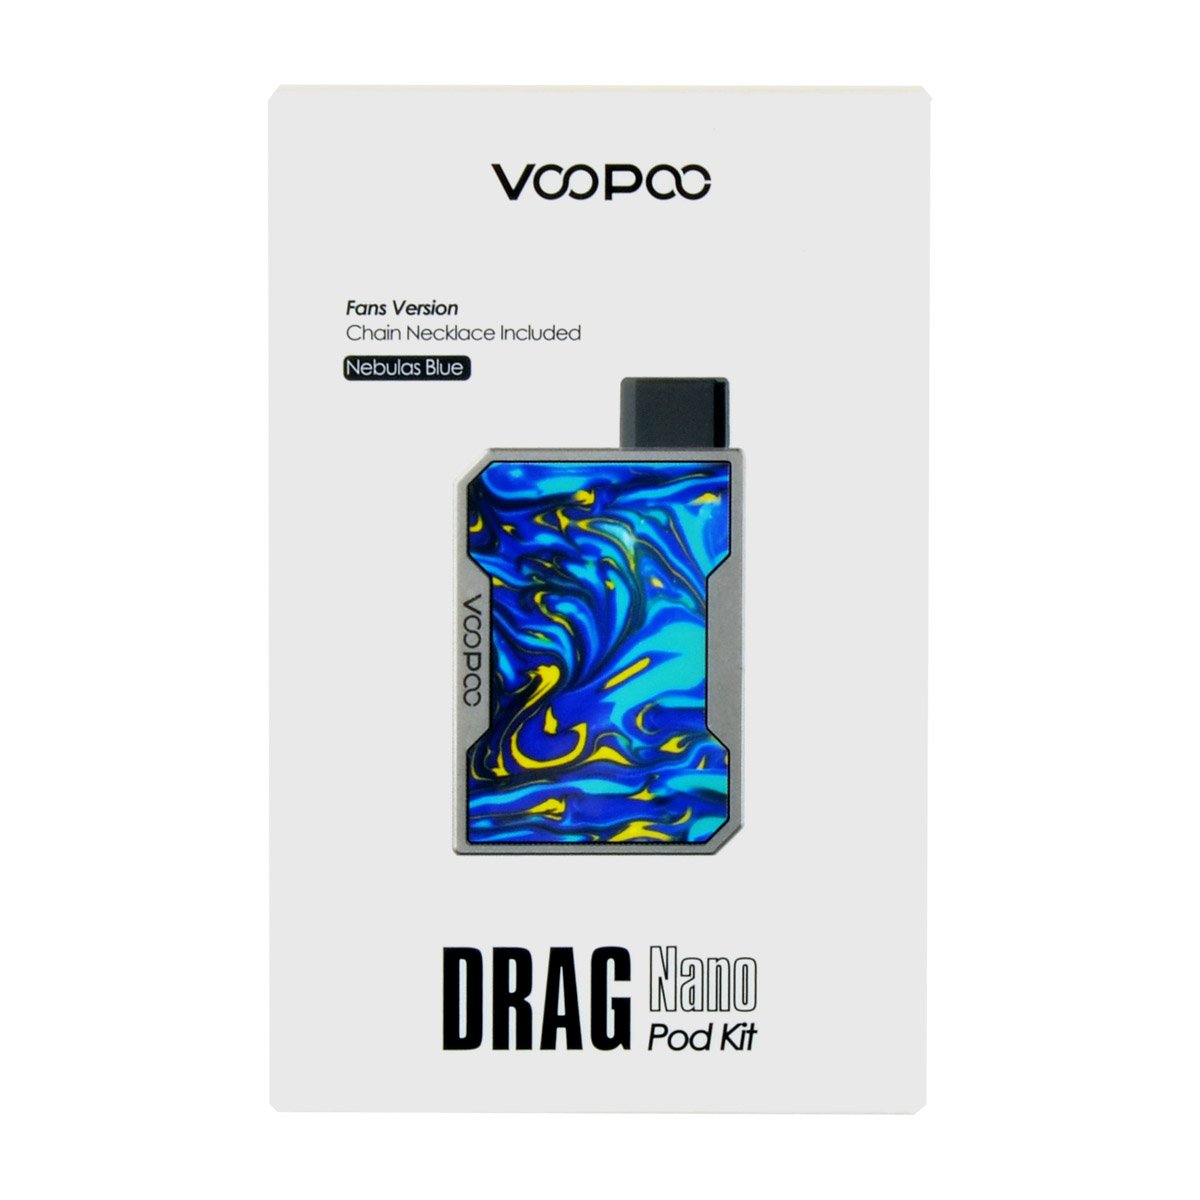 VooPoo Nebulas Blue Drag Nano Pod Kit